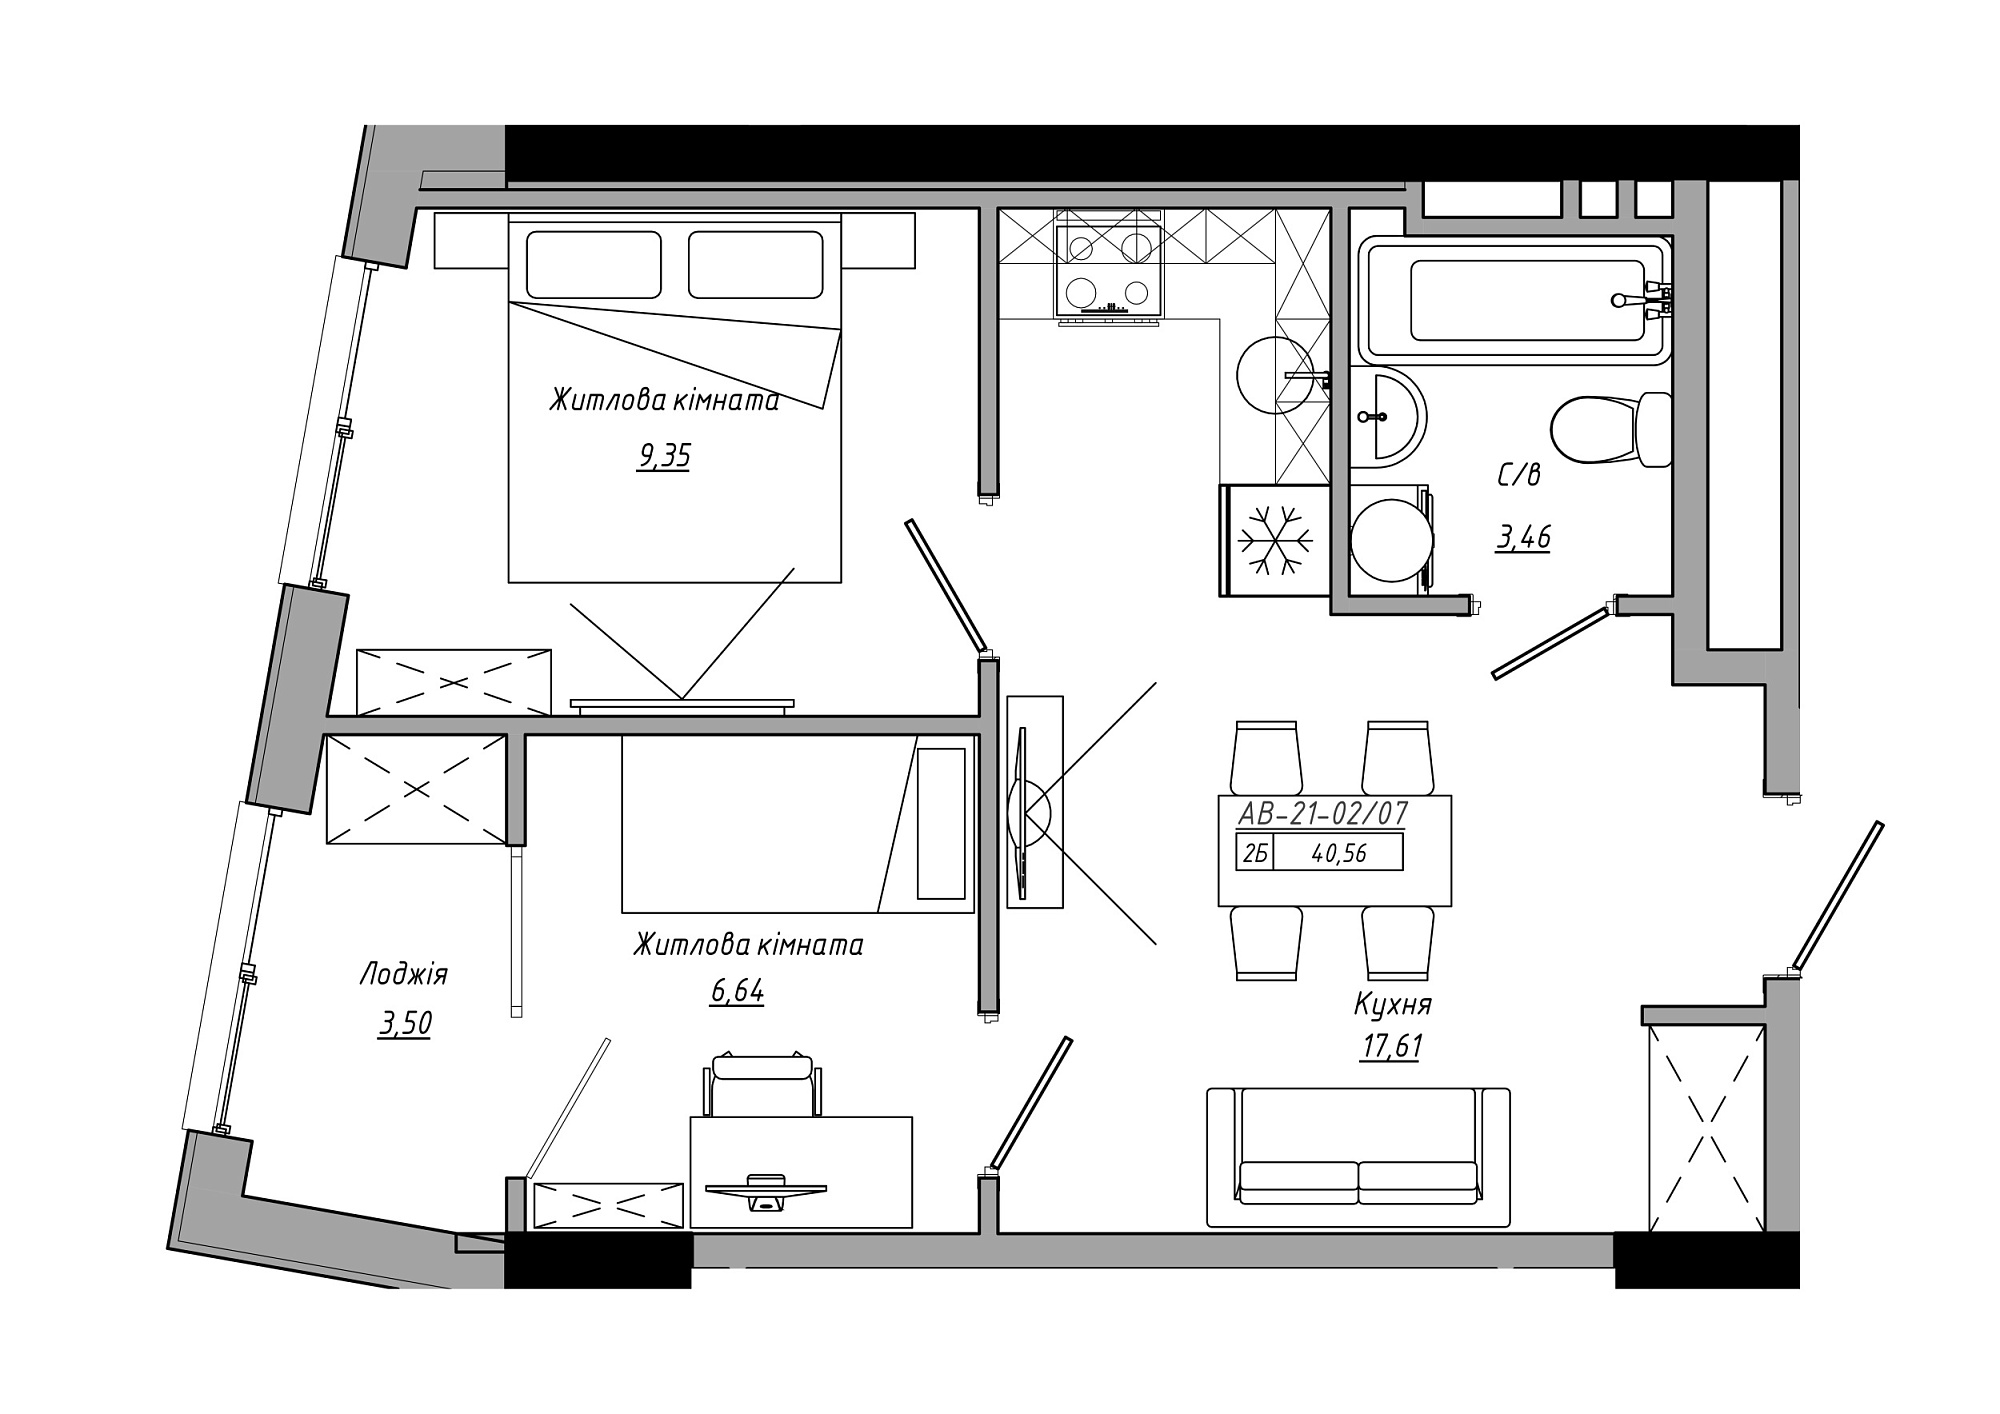 Планування 2-к квартира площею 40.56м2, AB-21-02/00007.